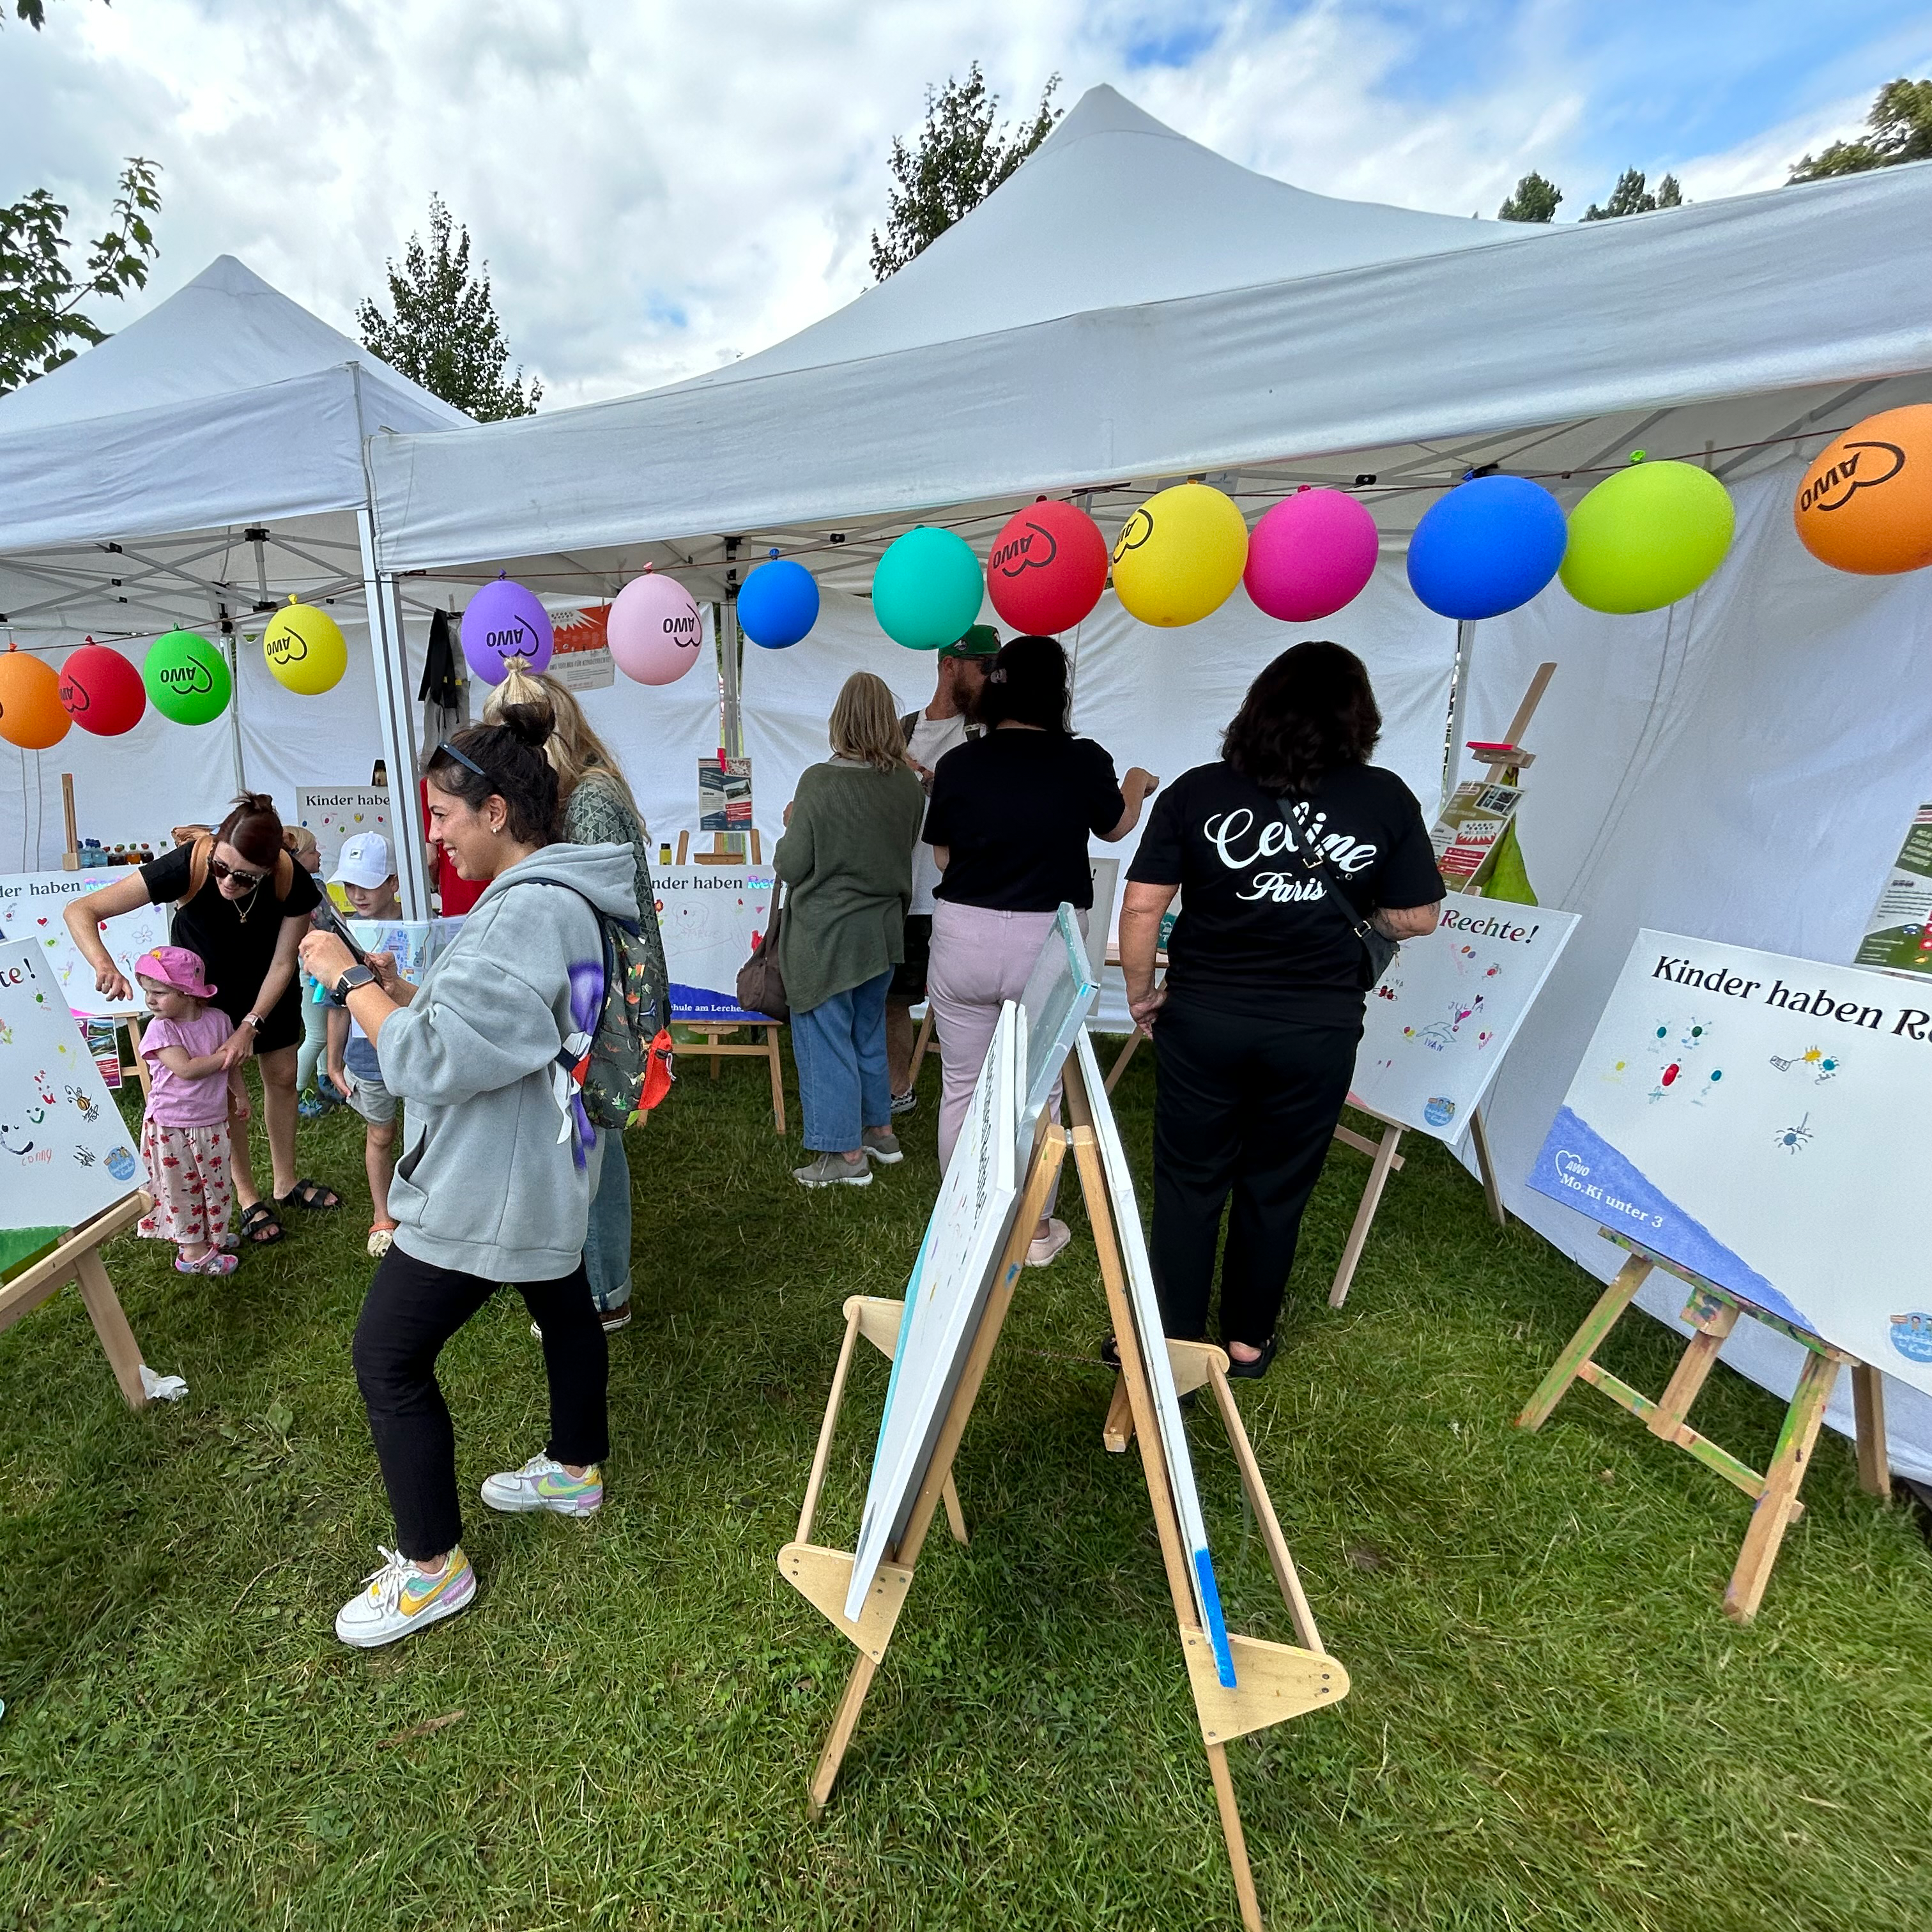 Das Bild zeigt eine Outdoor-Veranstaltung mit mehreren Personen, darunter Kinder und Erwachsene, die an Aktivitäten teilnehmen. Es gibt weiße Zelte mit bunten Luftballons daran. In den Zelten stehen Staffeleien mit Papieren, auf denen es so aussieht, als könnten die Menschen malen oder zeichnen.